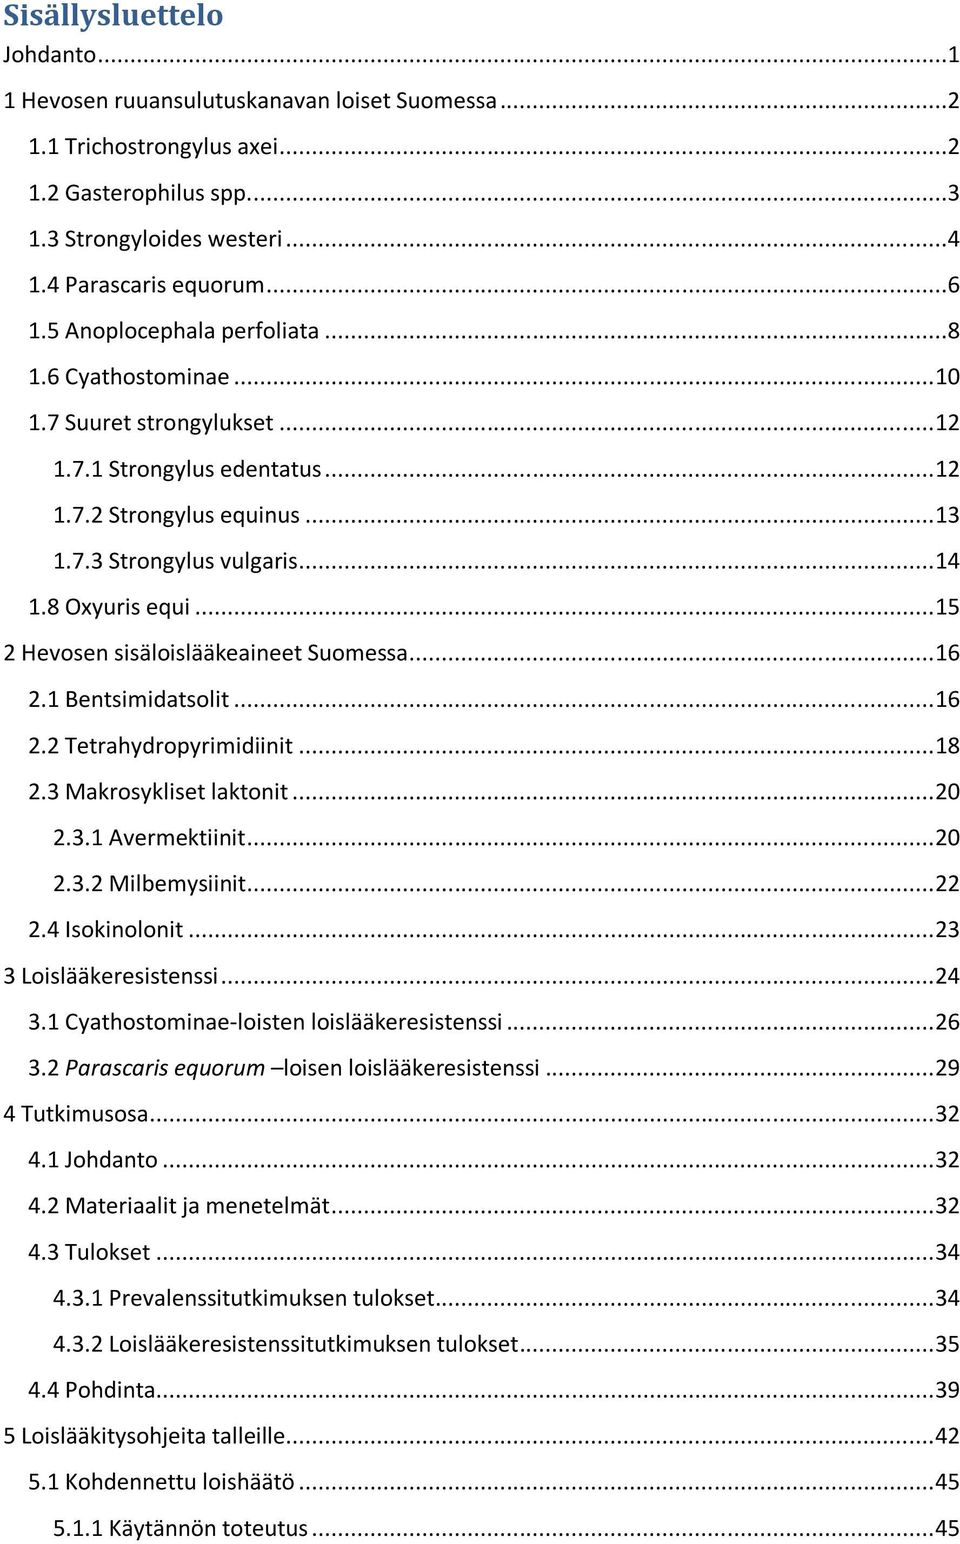 .. 15 2 Hevosen sisäloislääkeaineet Suomessa... 16 2.1 Bentsimidatsolit... 16 2.2 Tetrahydropyrimidiinit... 18 2.3 Makrosykliset laktonit... 20 2.3.1 Avermektiinit... 20 2.3.2 Milbemysiinit... 22 2.